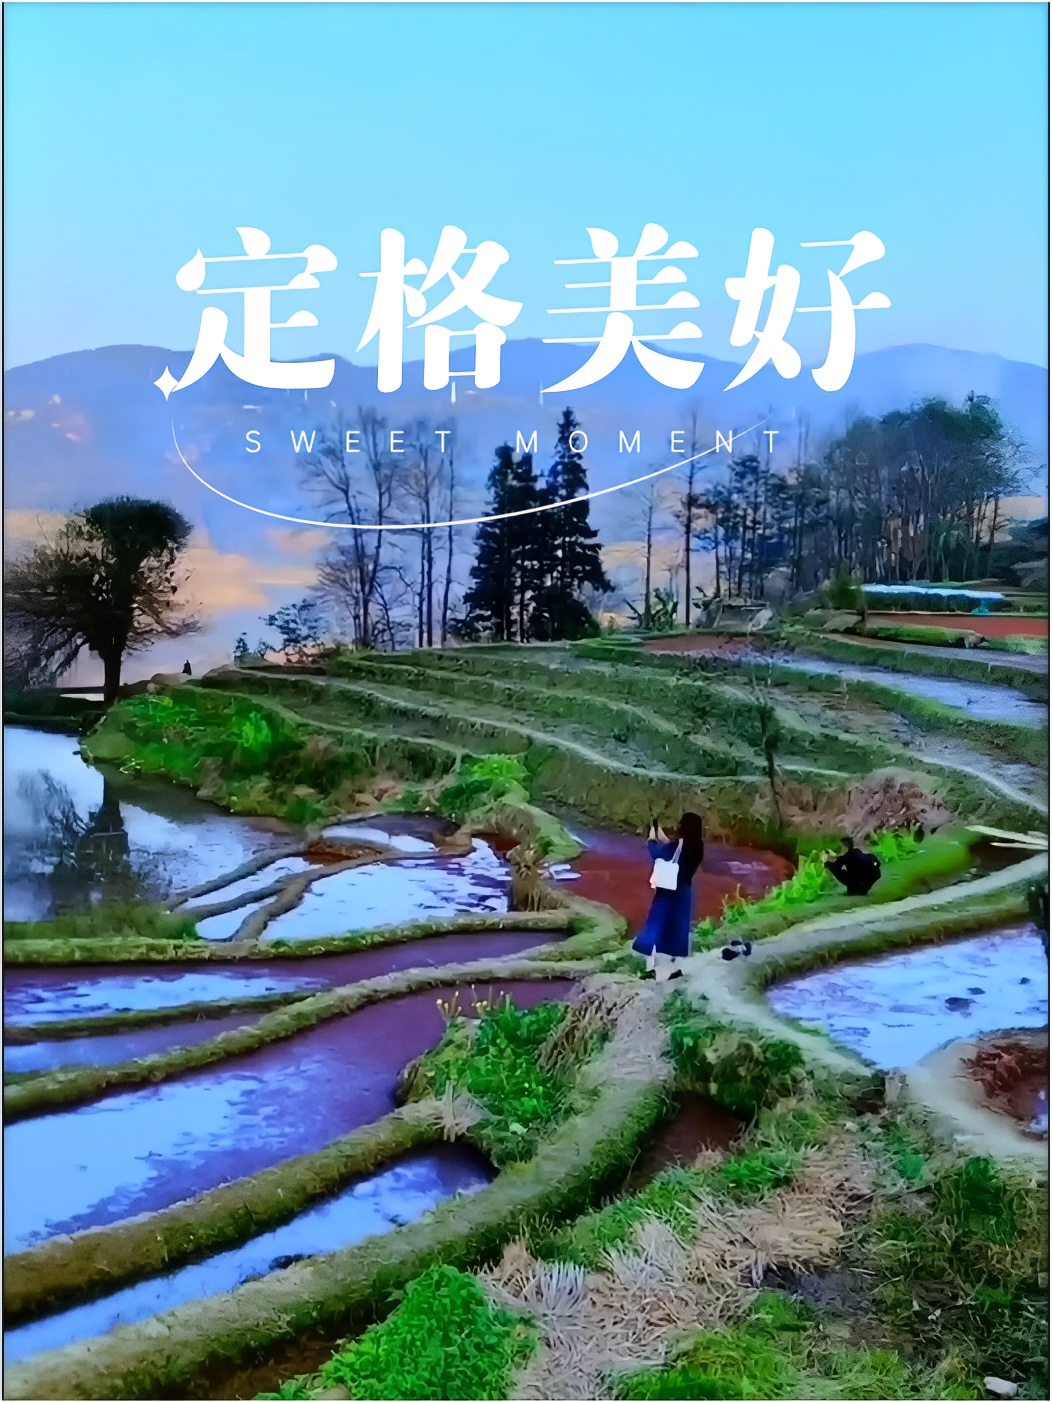 元阳梯田位于云南省红河州元阳县，是红河哈尼梯田的核心区。下面是一个三天两晚的元阳梯田旅游攻略：   